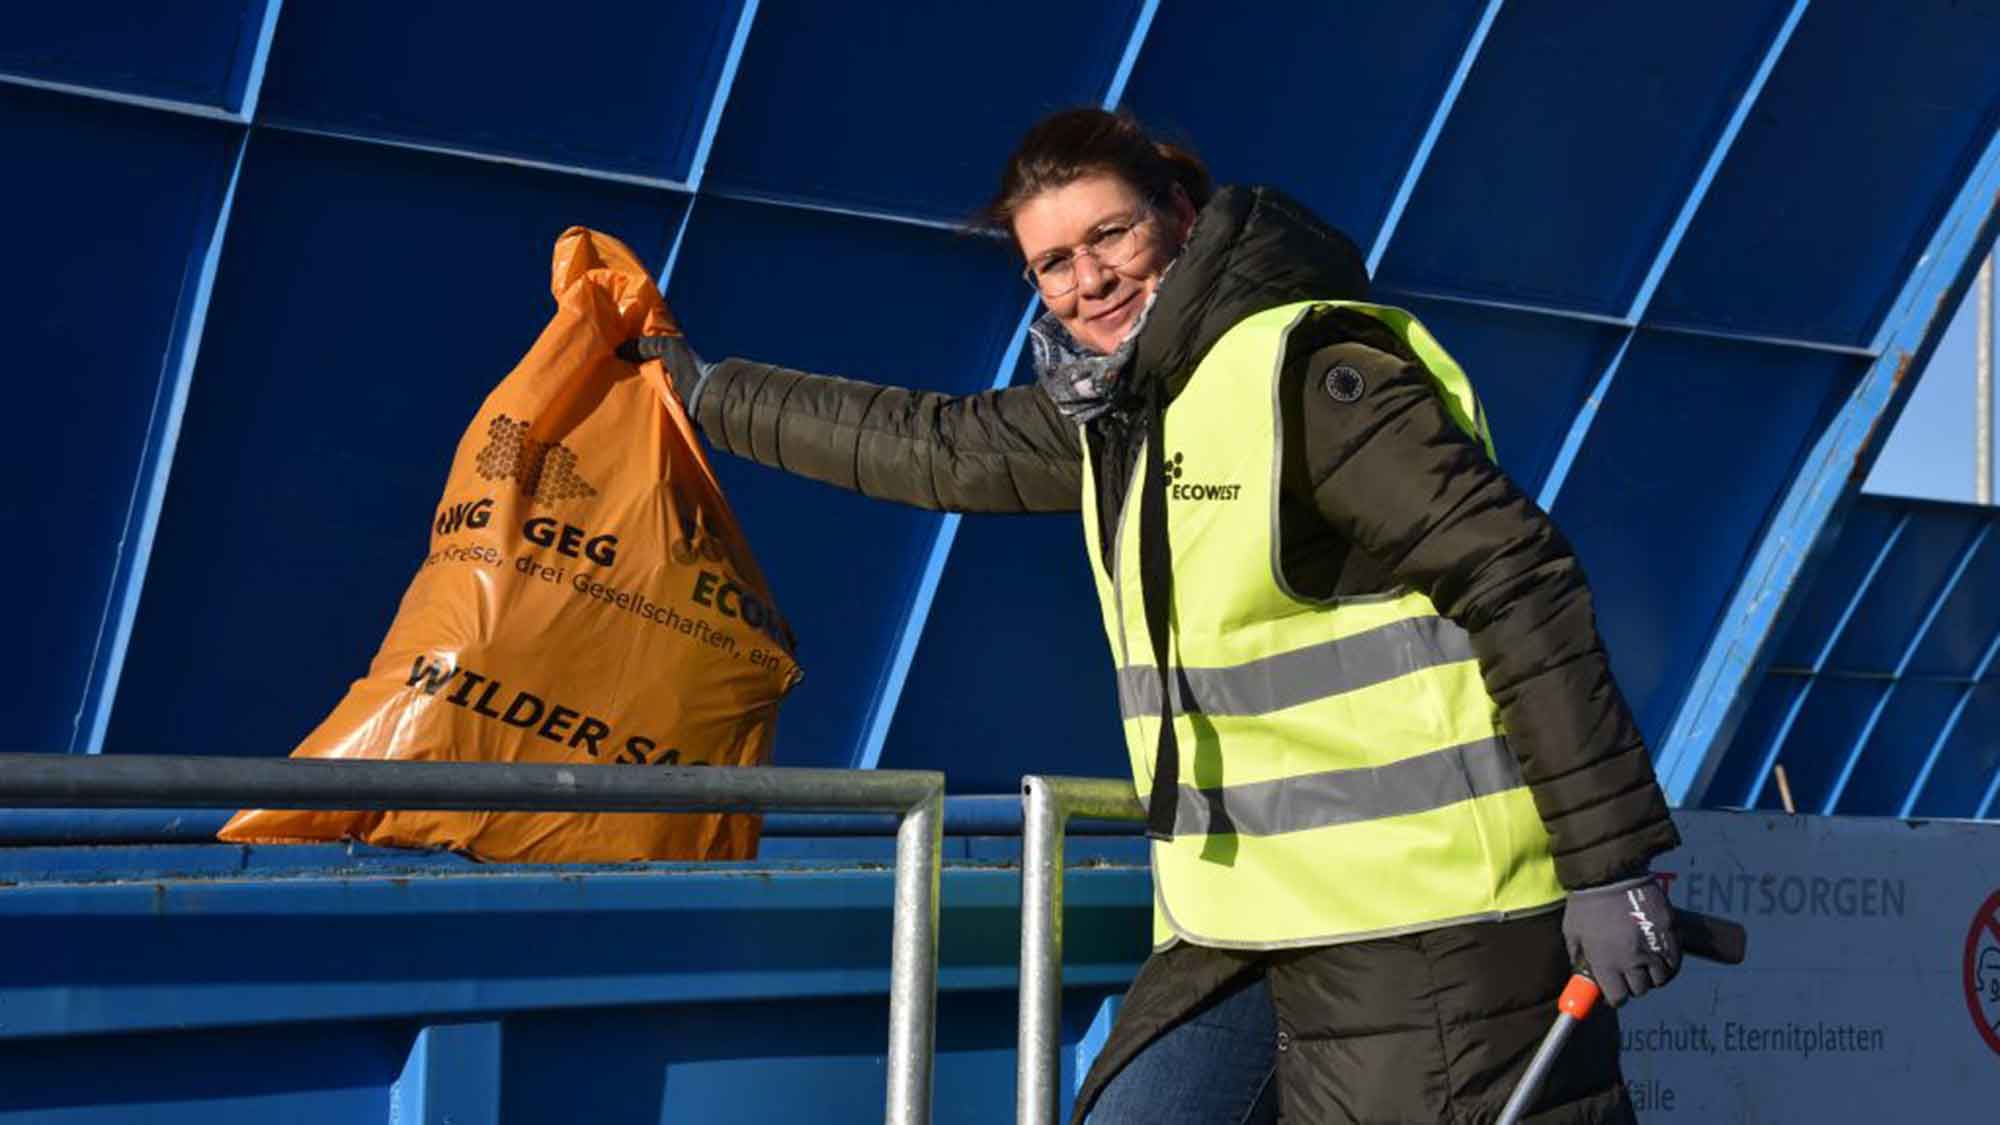 AWG und GEG unterstützen Abfallsammelaktionen: Equipment für die gute Tat in den Kreisen Warendorf und Gütersloh